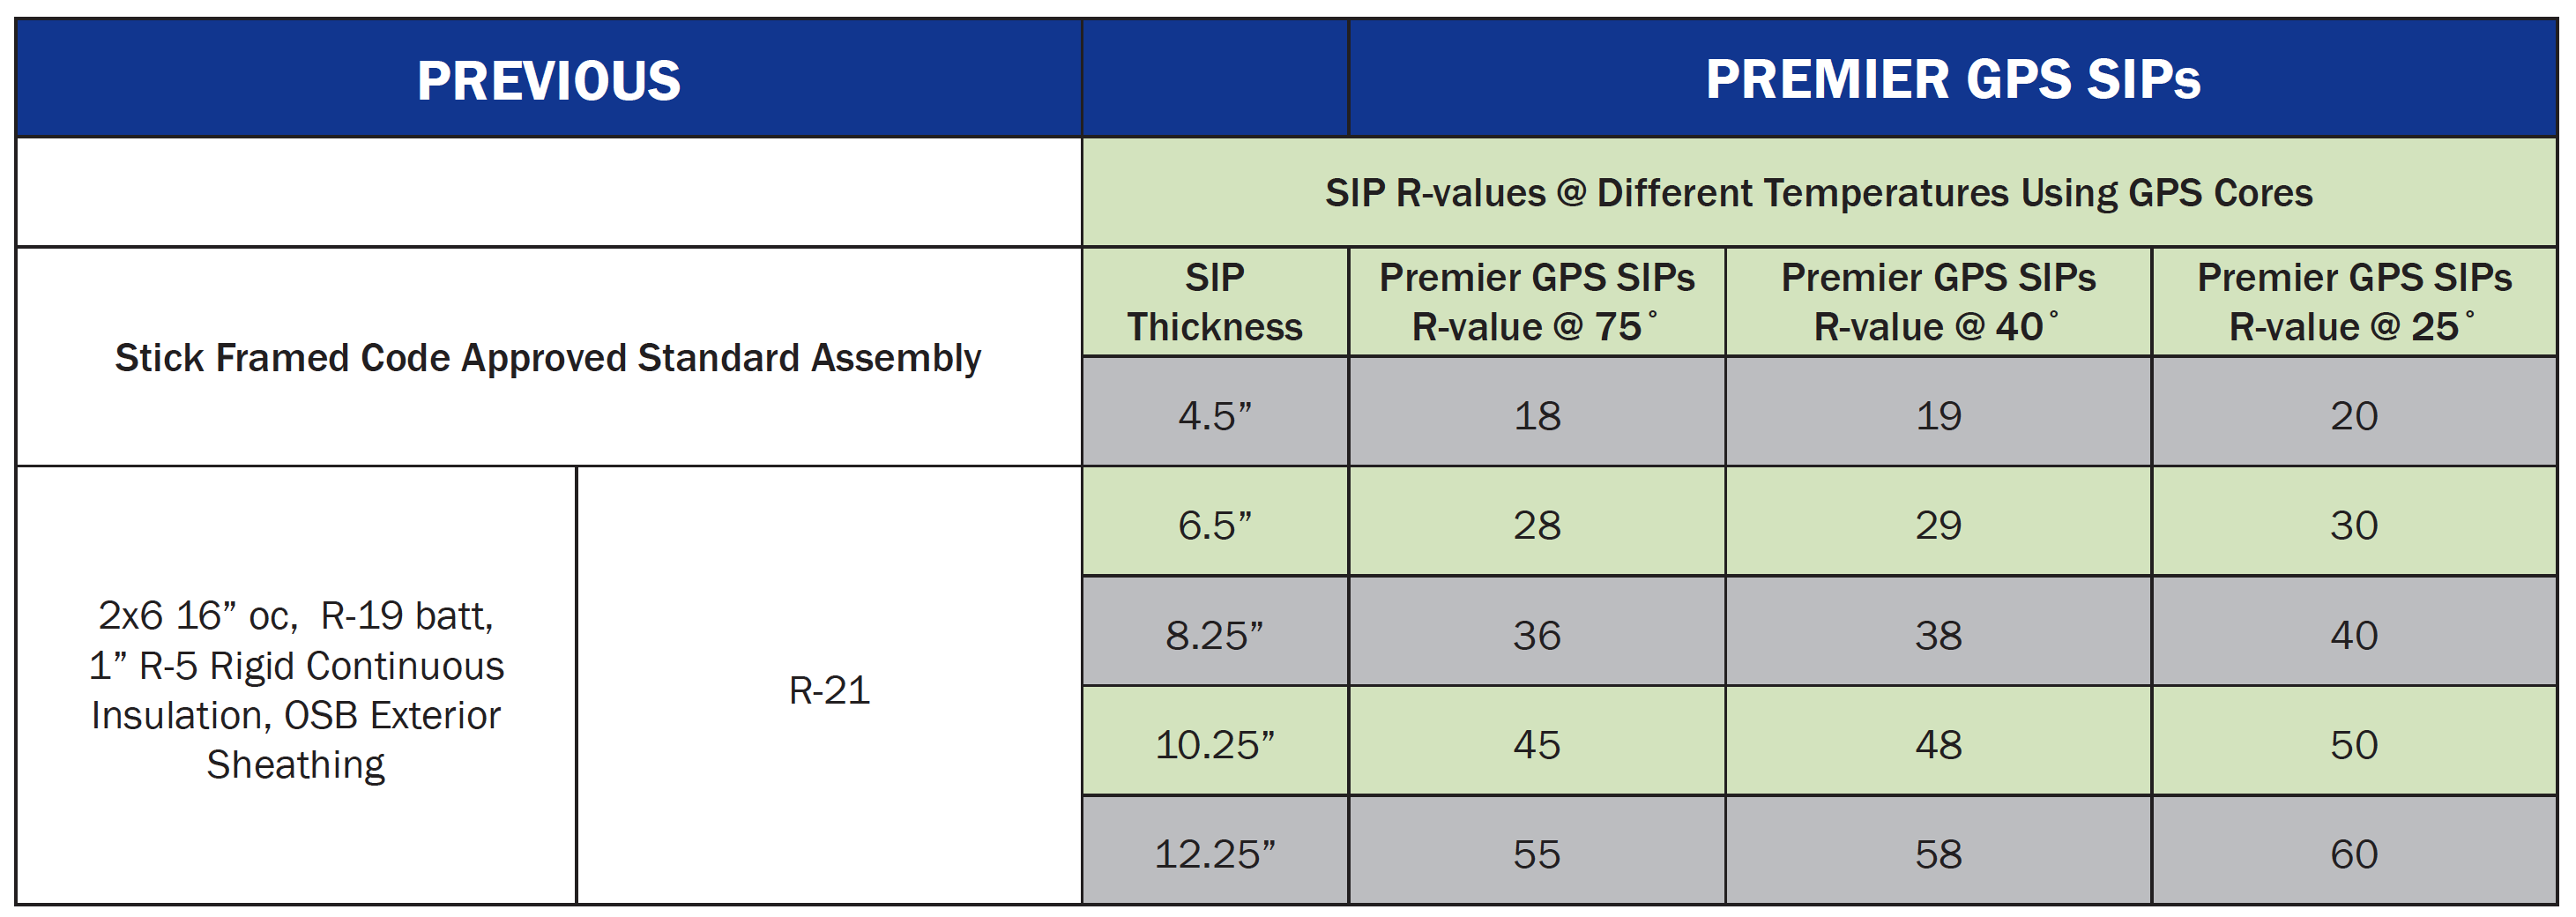 GPS vs Sticks Whole Wall R-value Comparison